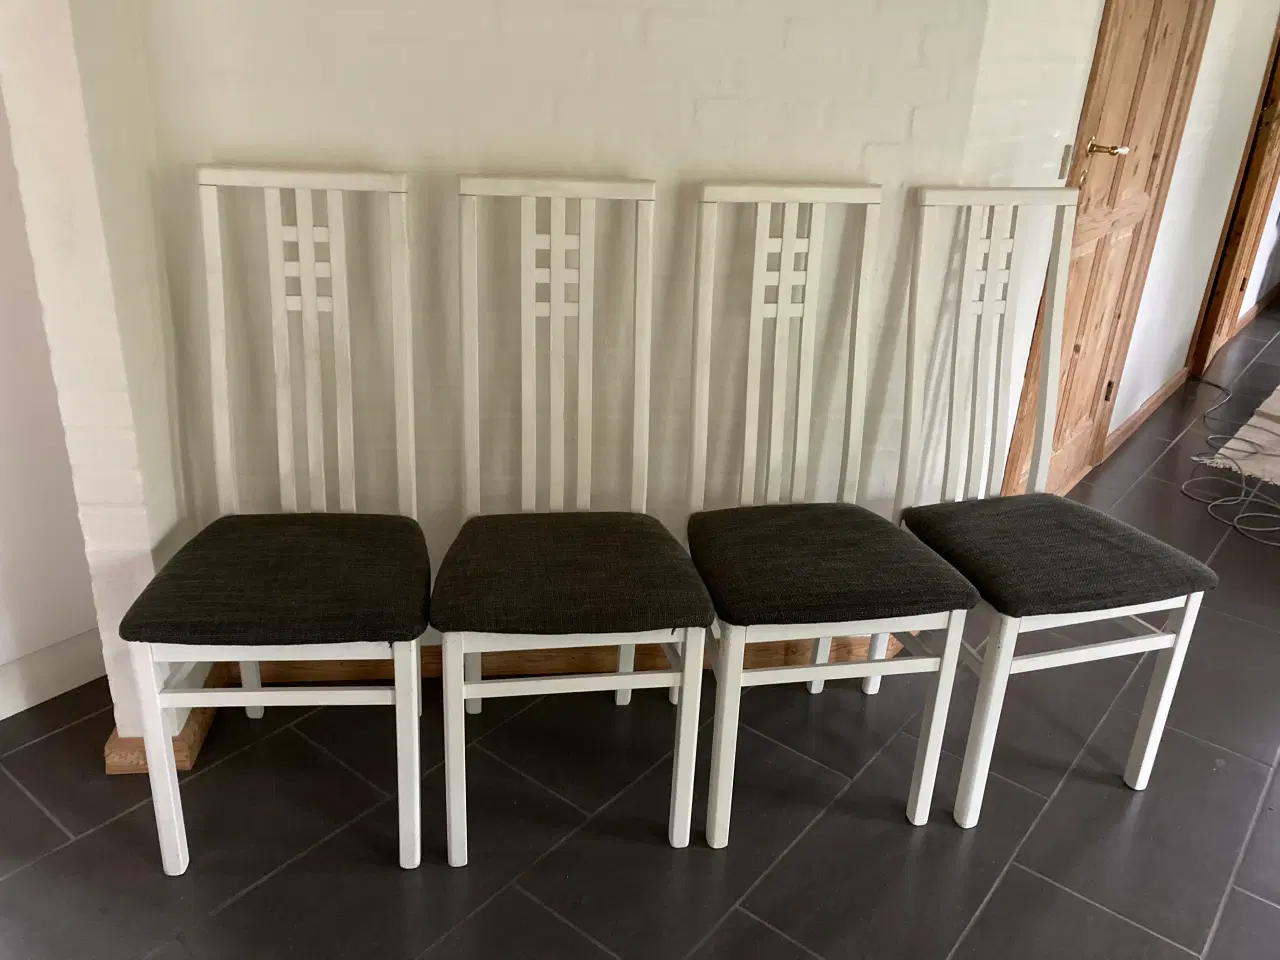 Billede 1 - 4 spisebordsstole sælges billigt